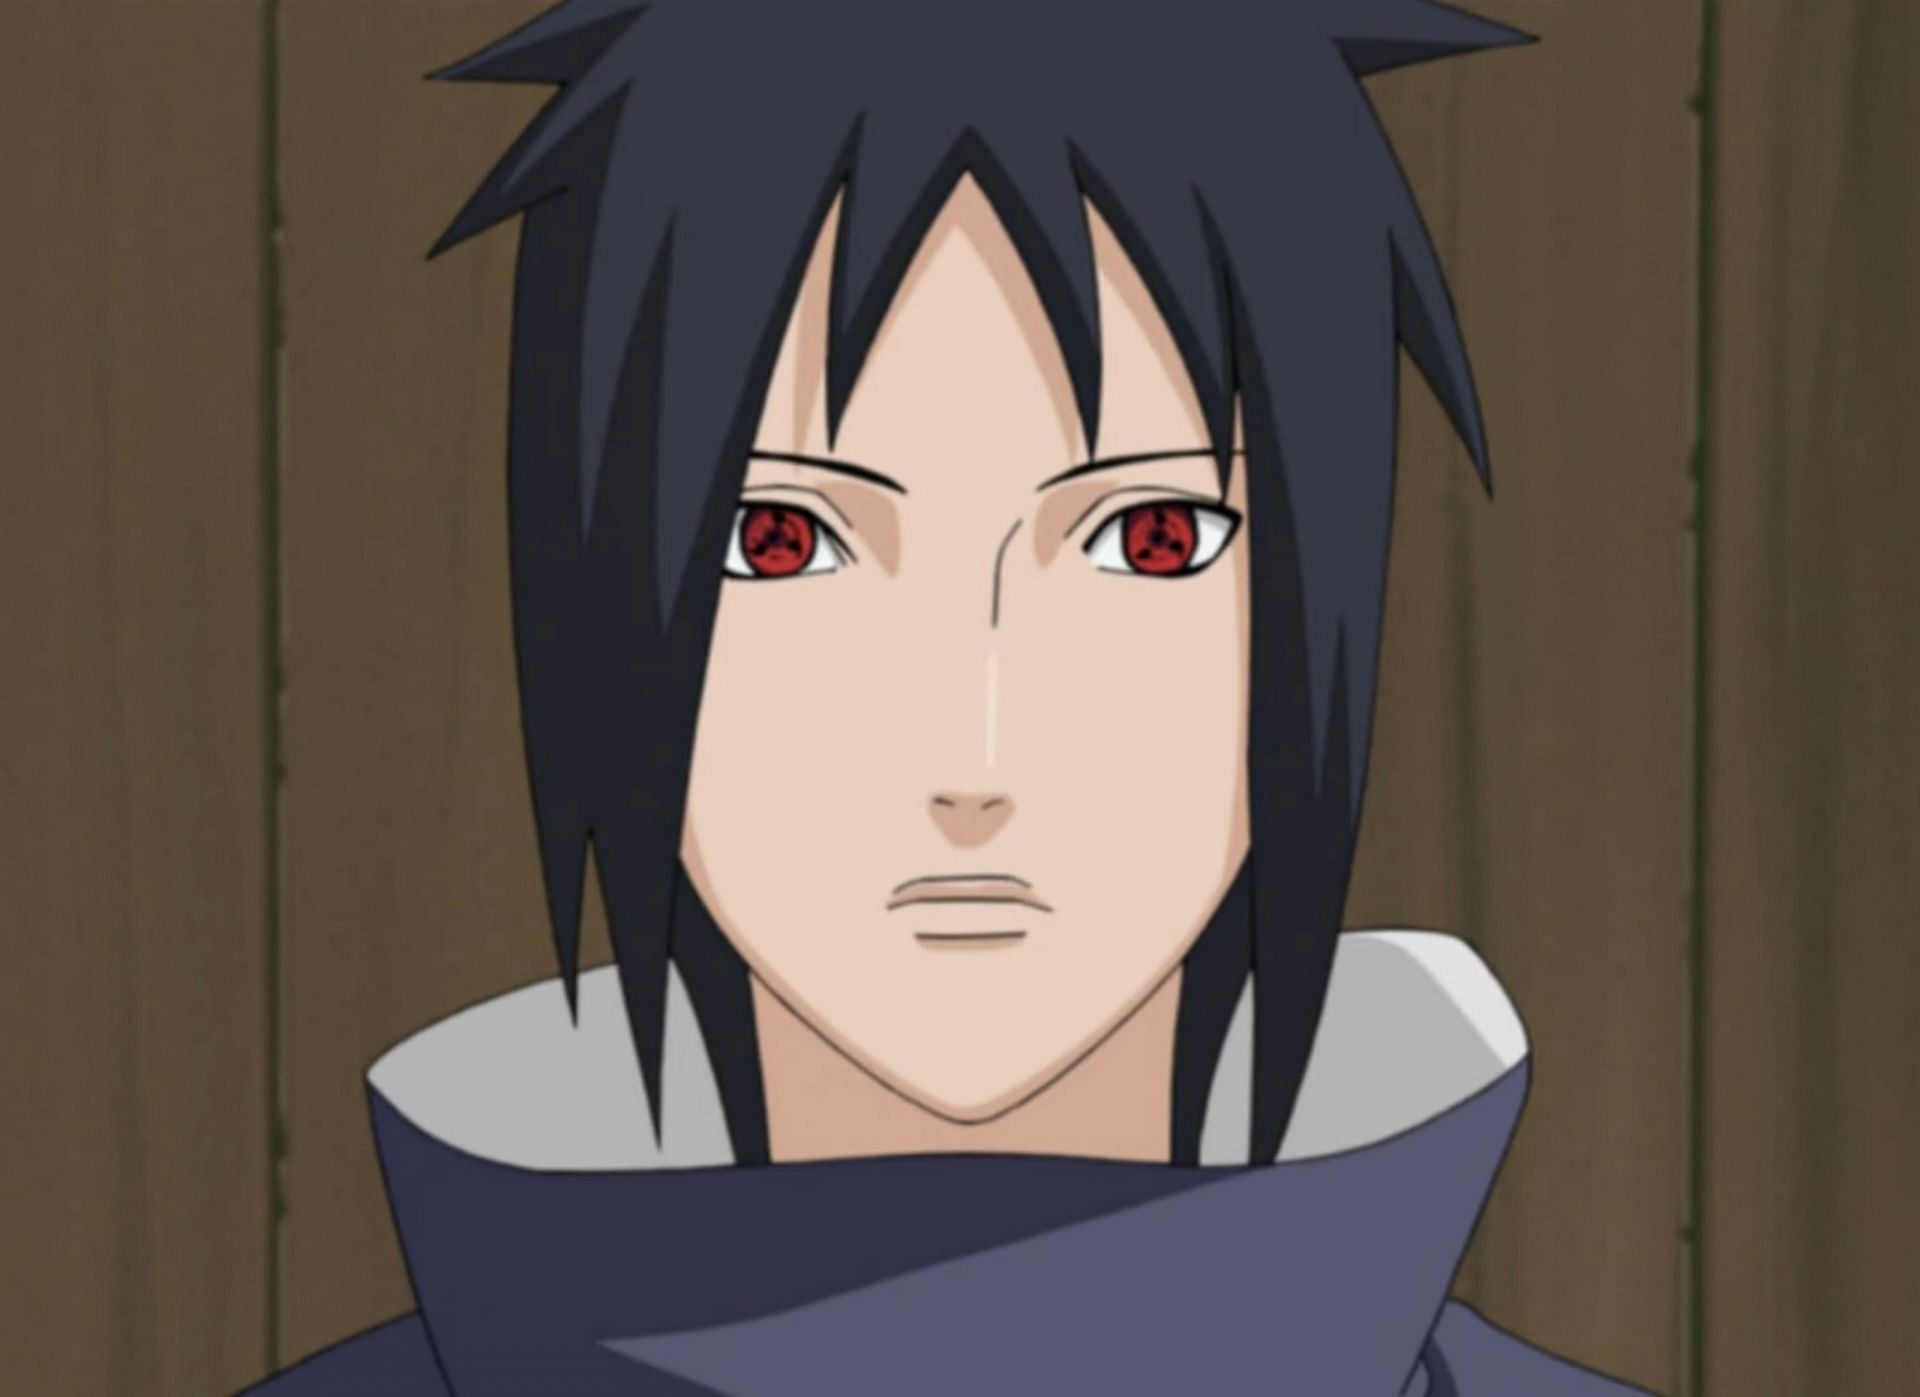 Izuna Uchiha from the Naruto series (Image via Pierrot)